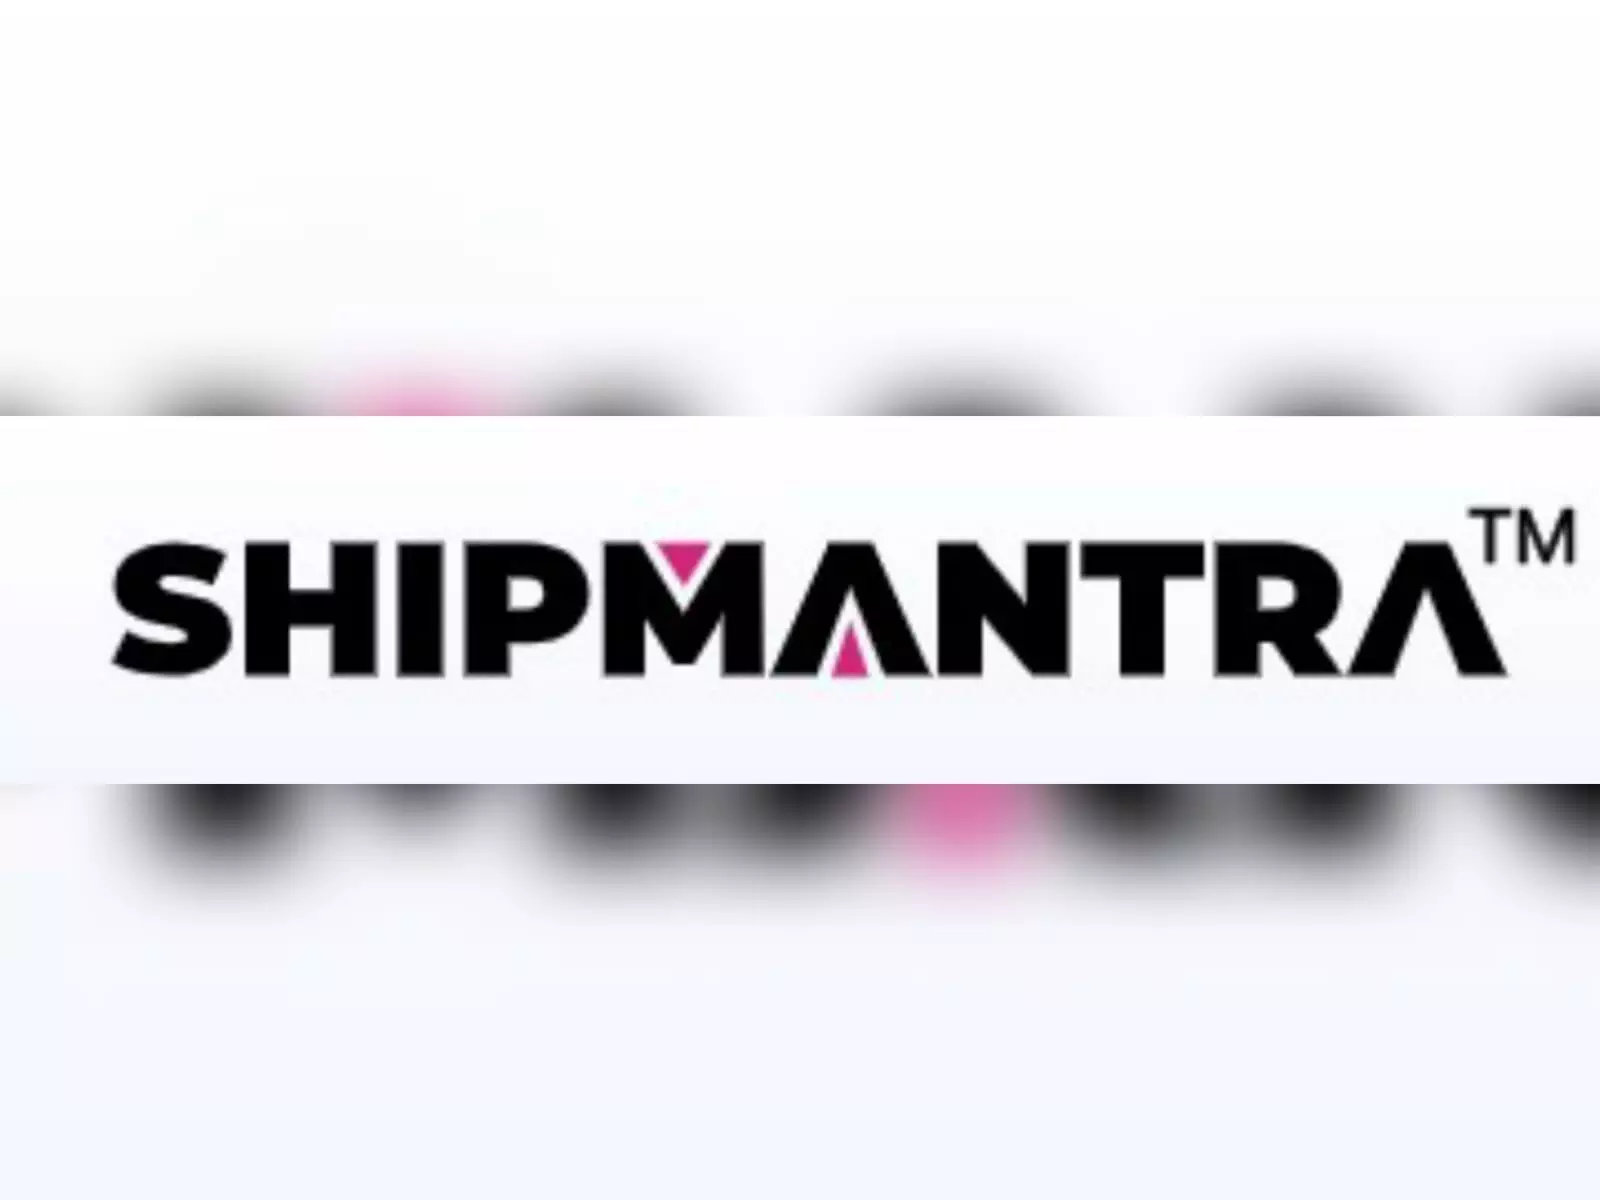 Shipmantra